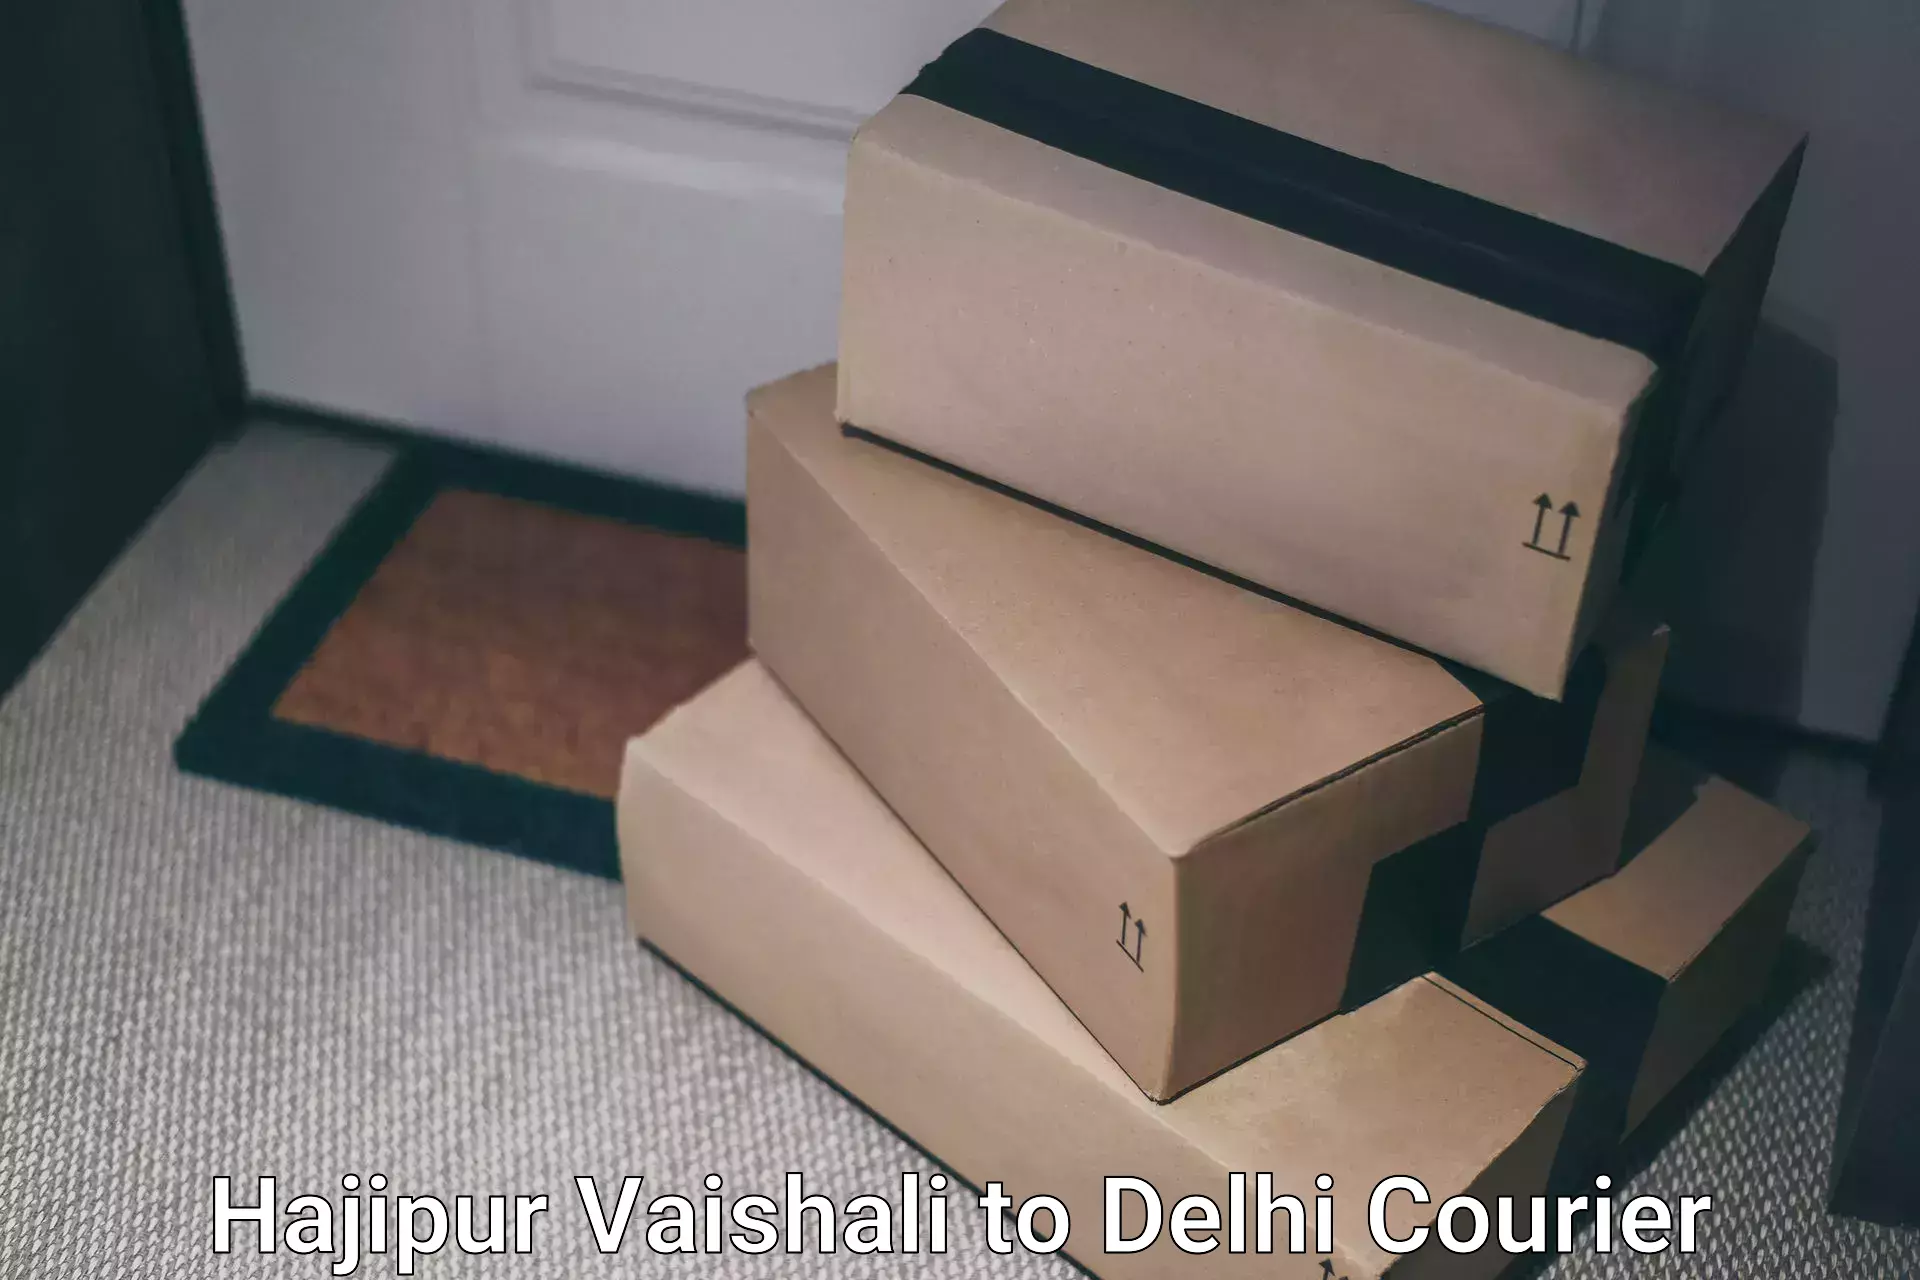 Easy access courier services Hajipur Vaishali to Jawaharlal Nehru University New Delhi